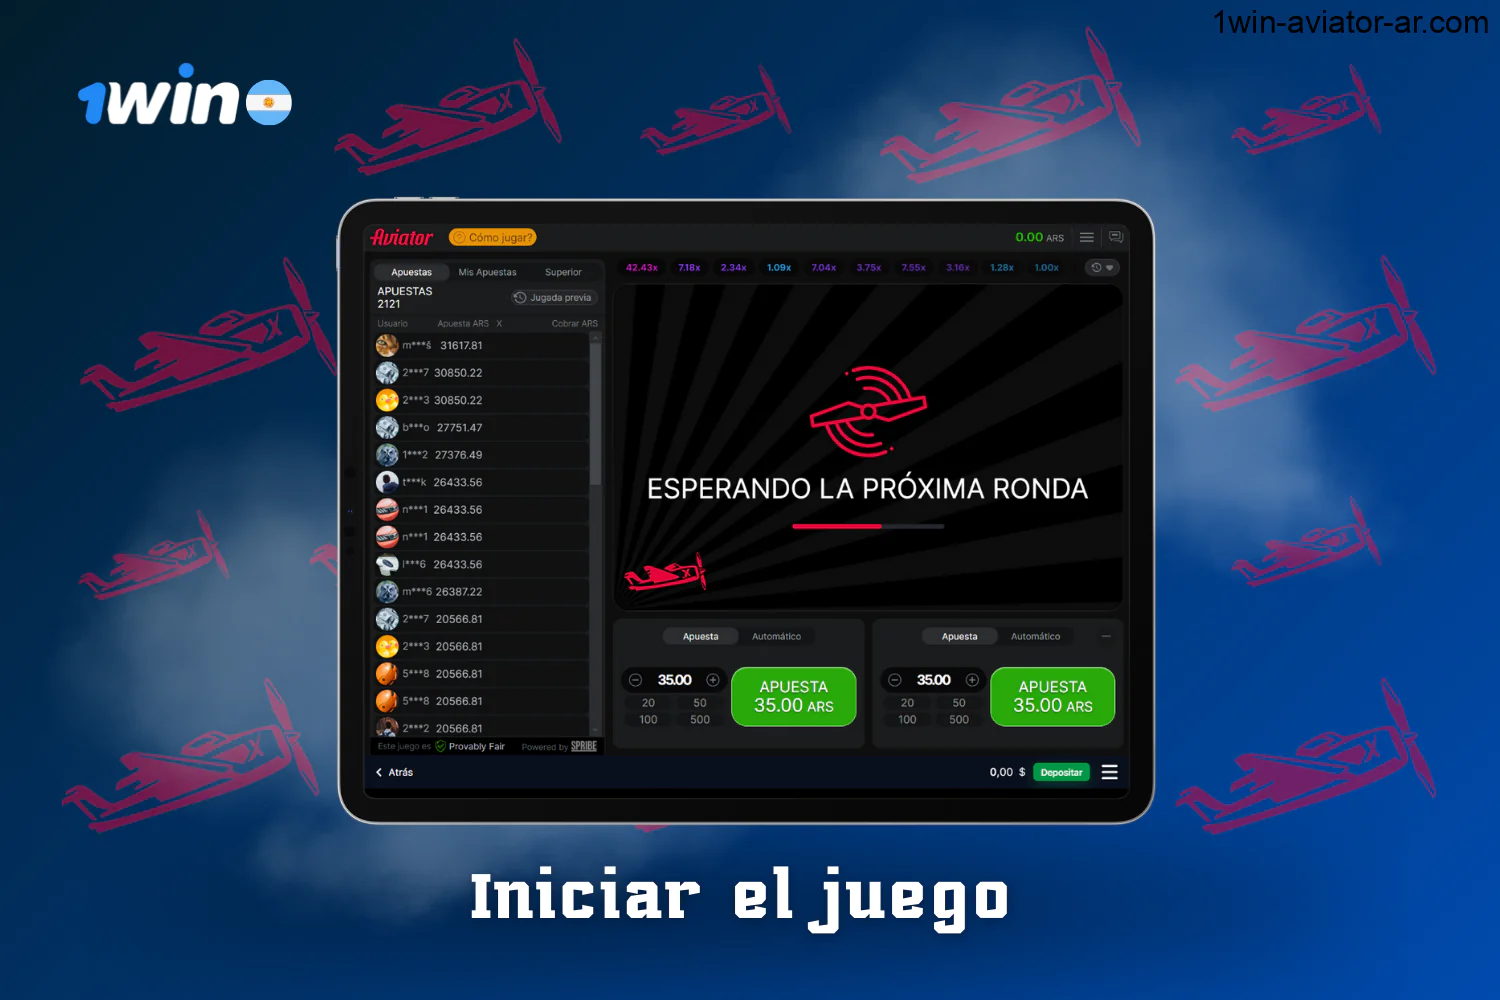 Los usuarios del casino 1win de Argentina pueden empezar a jugar al Aviator